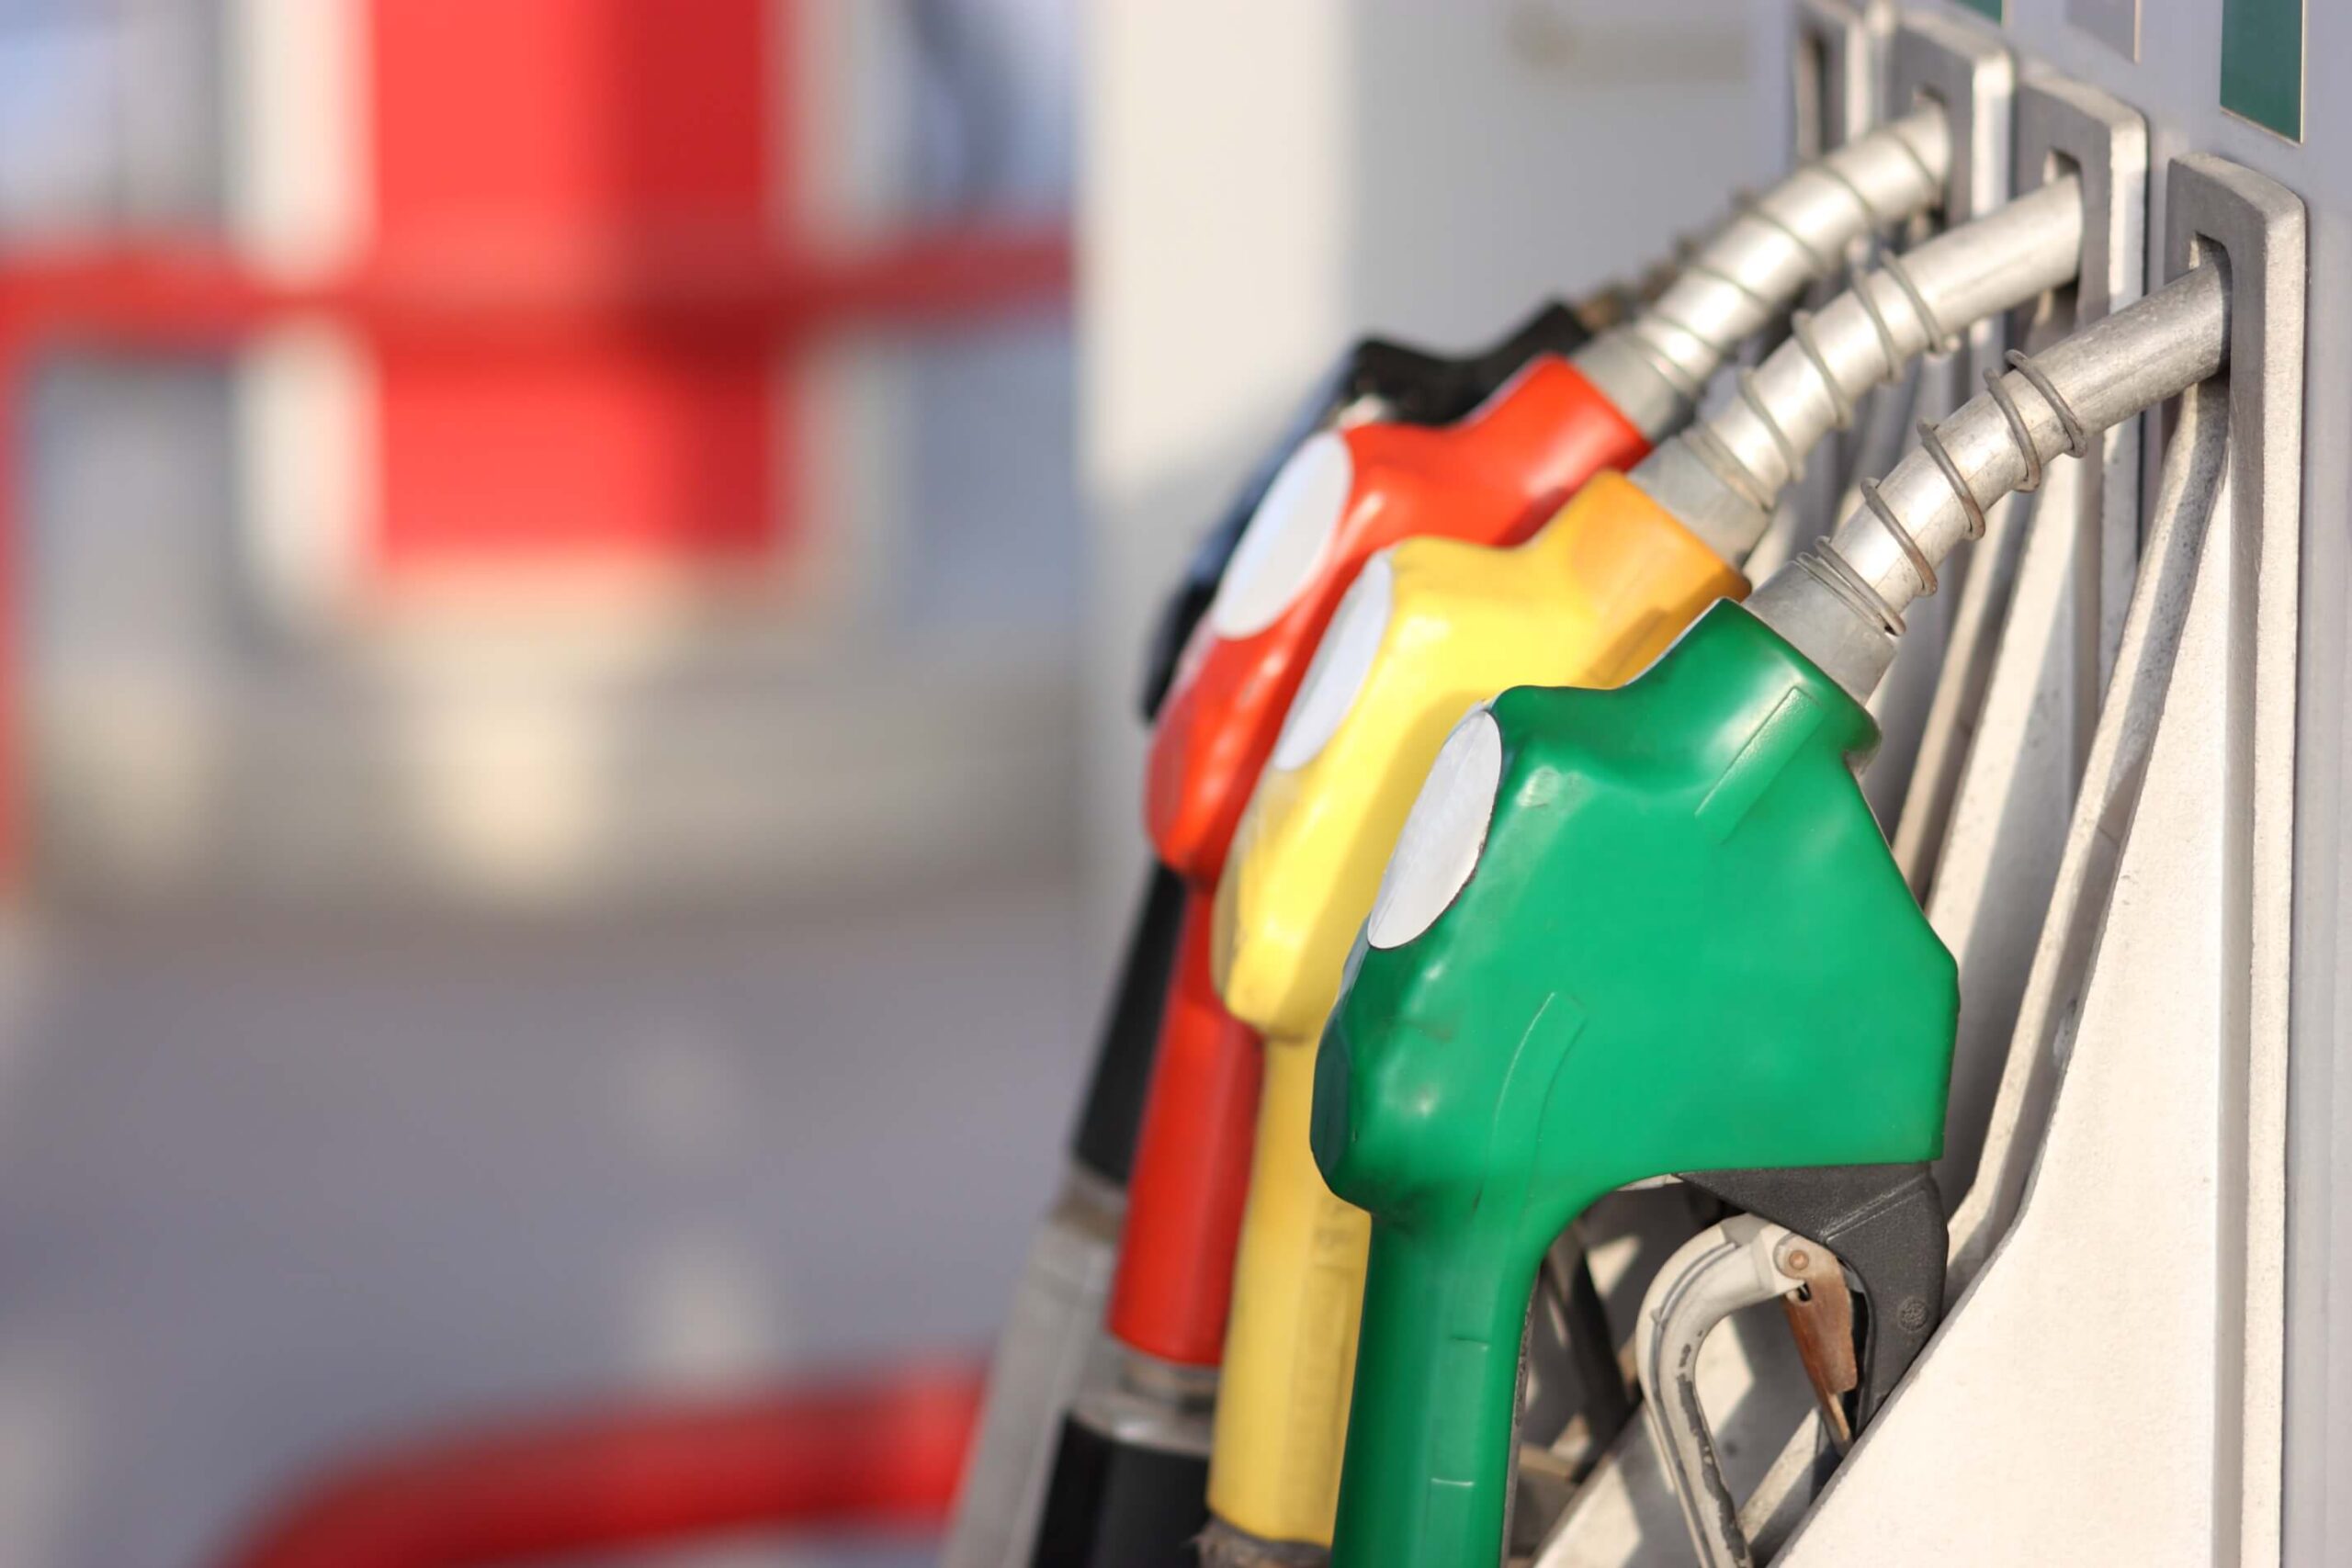 Combustíveis: gasolina baixa mas gasóleo dispara de preço na próxima semana. Saiba quanto vai pagar para atestar o depósito